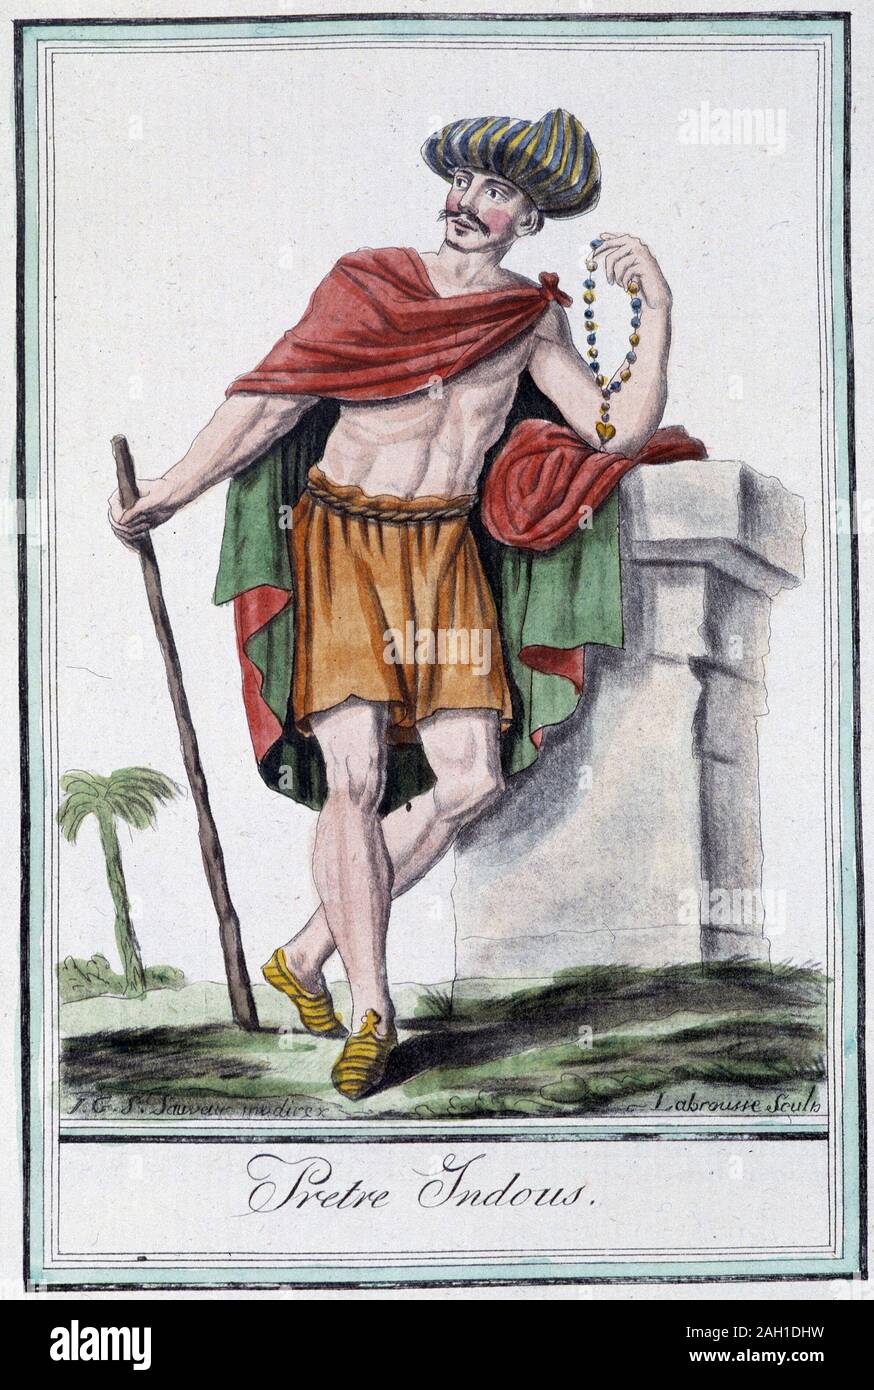 Prtre indous (hindou) - in "Encyclopedie des voyages" par Grasset Saint Sauveur, ed. Paris 1796 Stock Photo